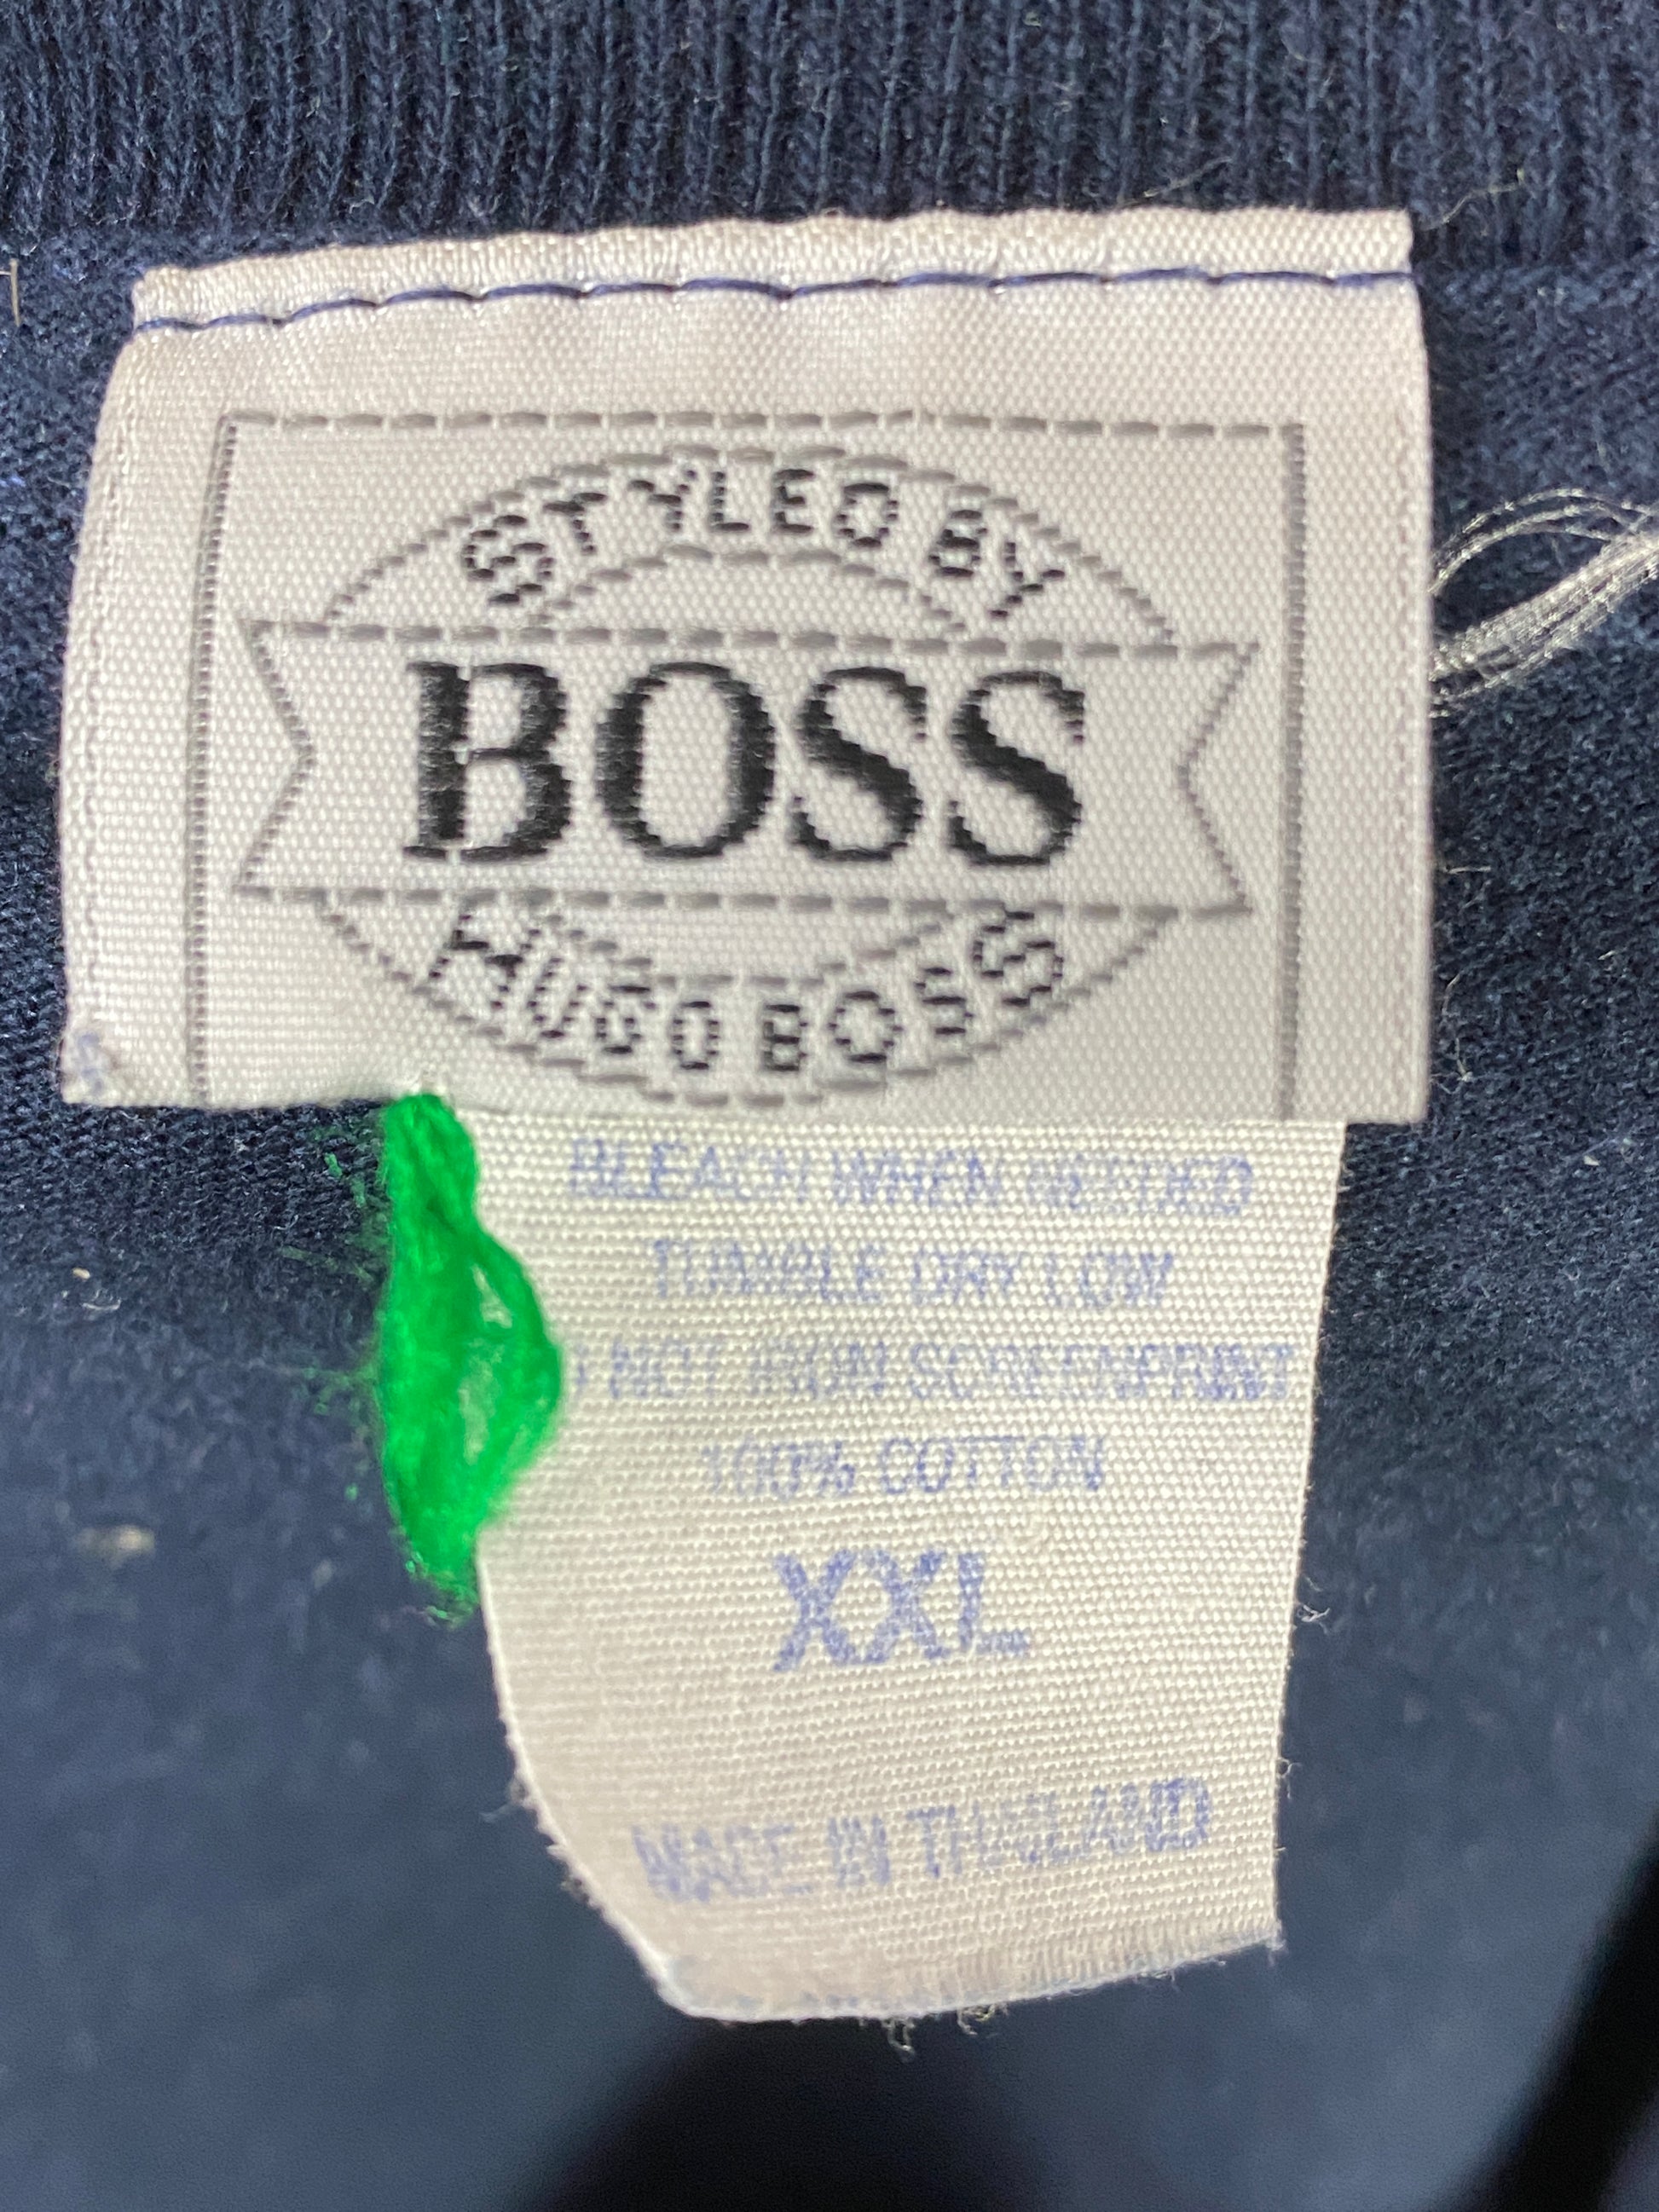 90s Hugo Boss Vintage Men's T-Shirt